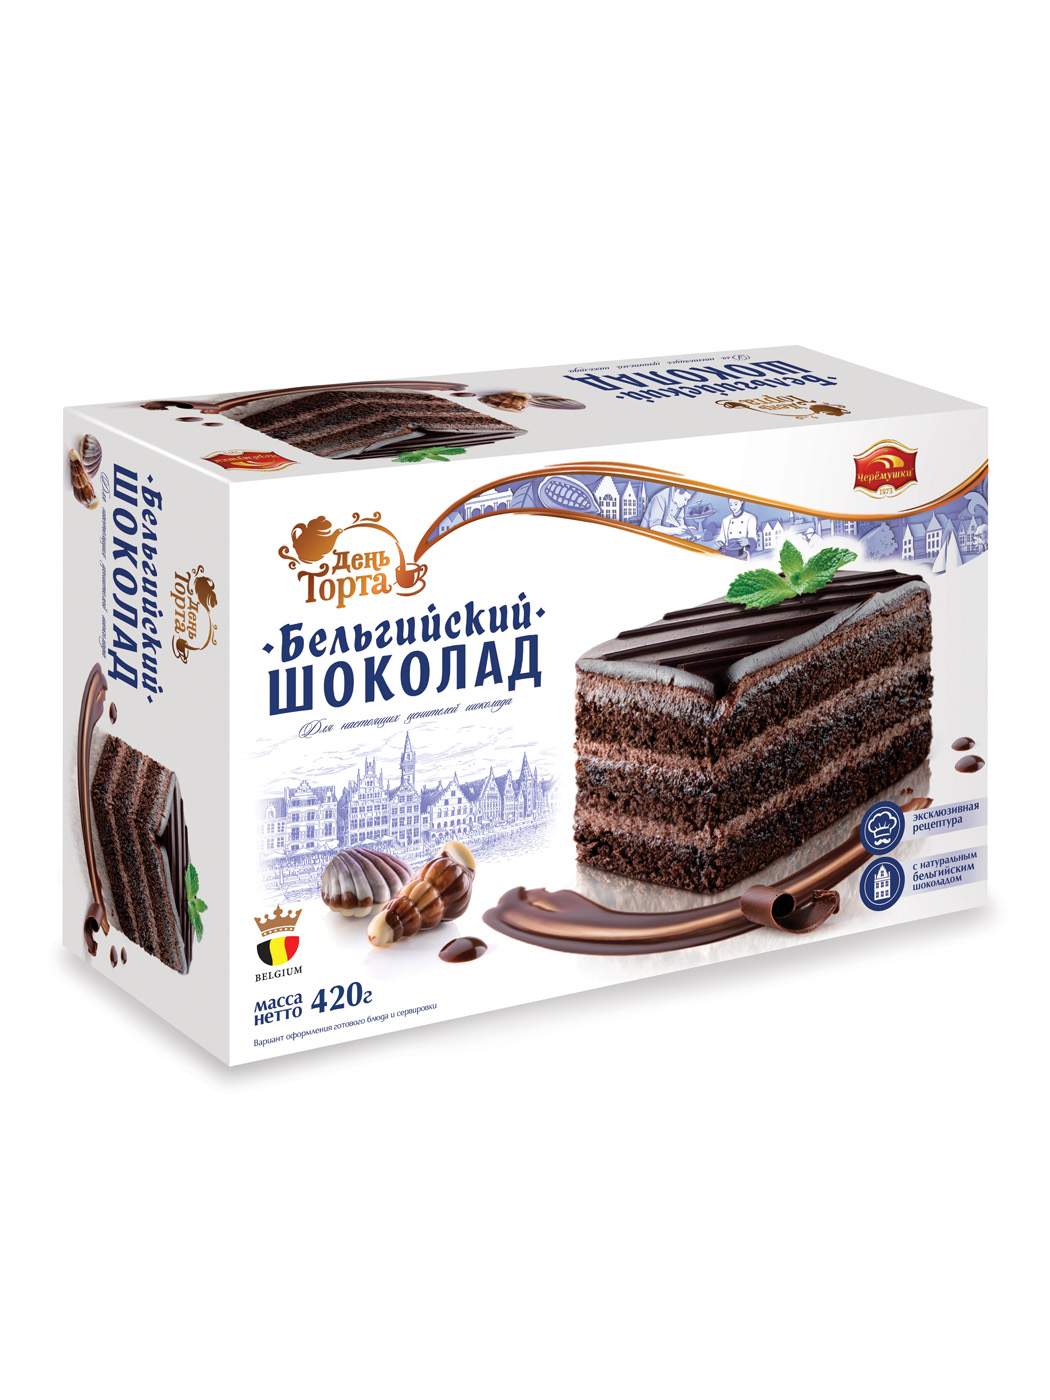 Купить торт Бельгийский шоколад Черемушки 420гр/Вкус знакомый с детства .